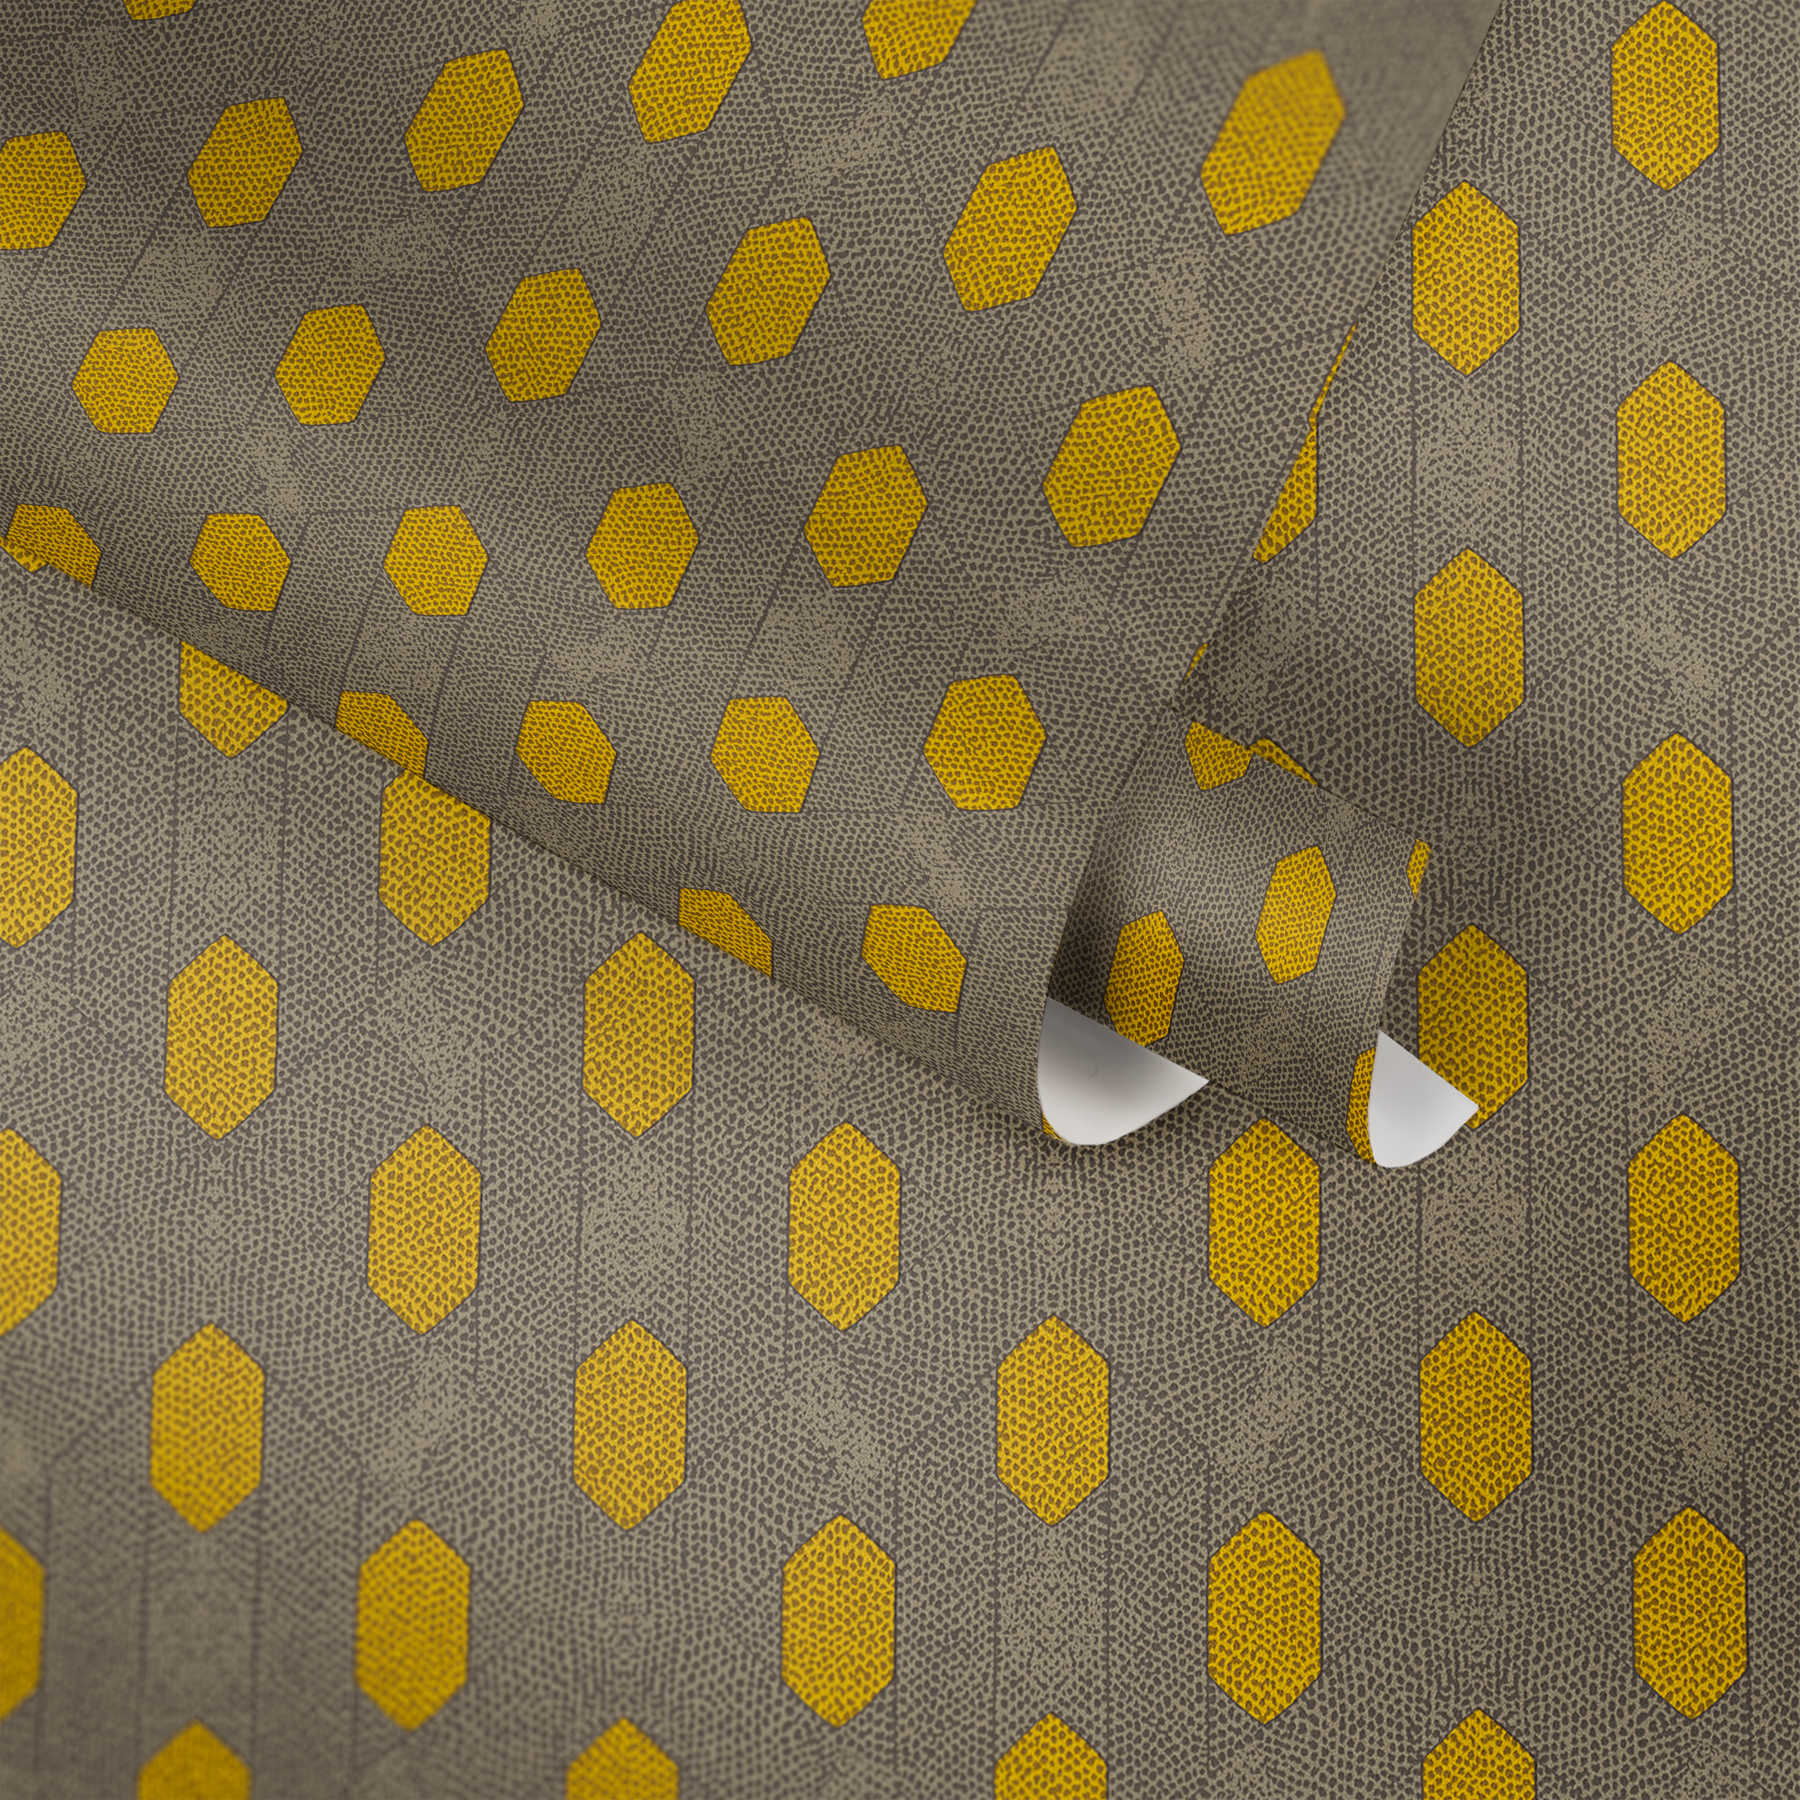             Papel pintado no tejido con motivos geométricos de puntos - amarillo, gris, marrón
        